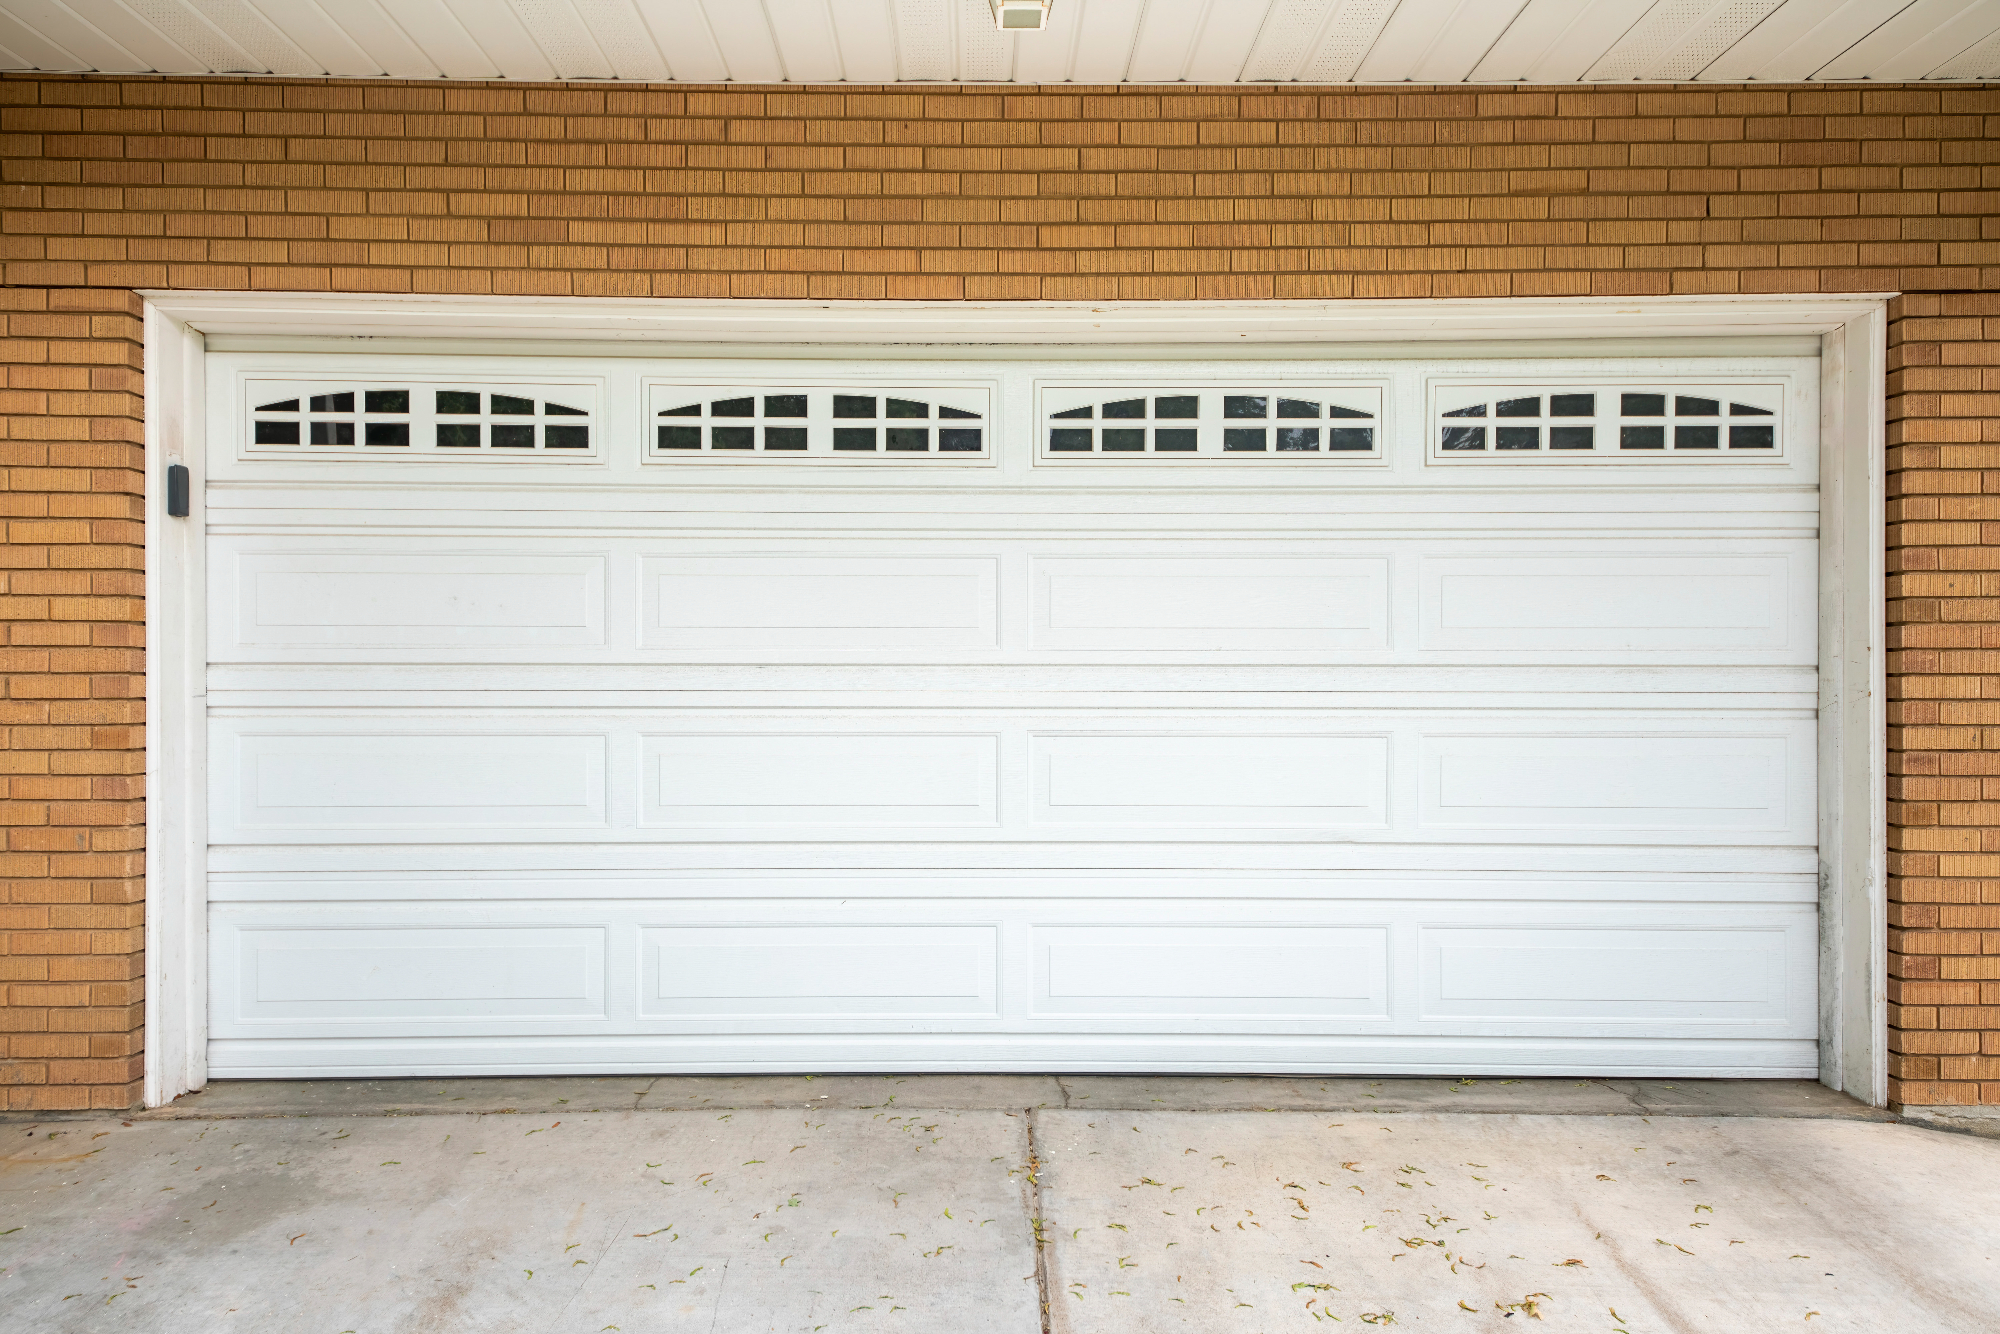 Sekcijska garažna vrata pridejo prav v vsaki garaži